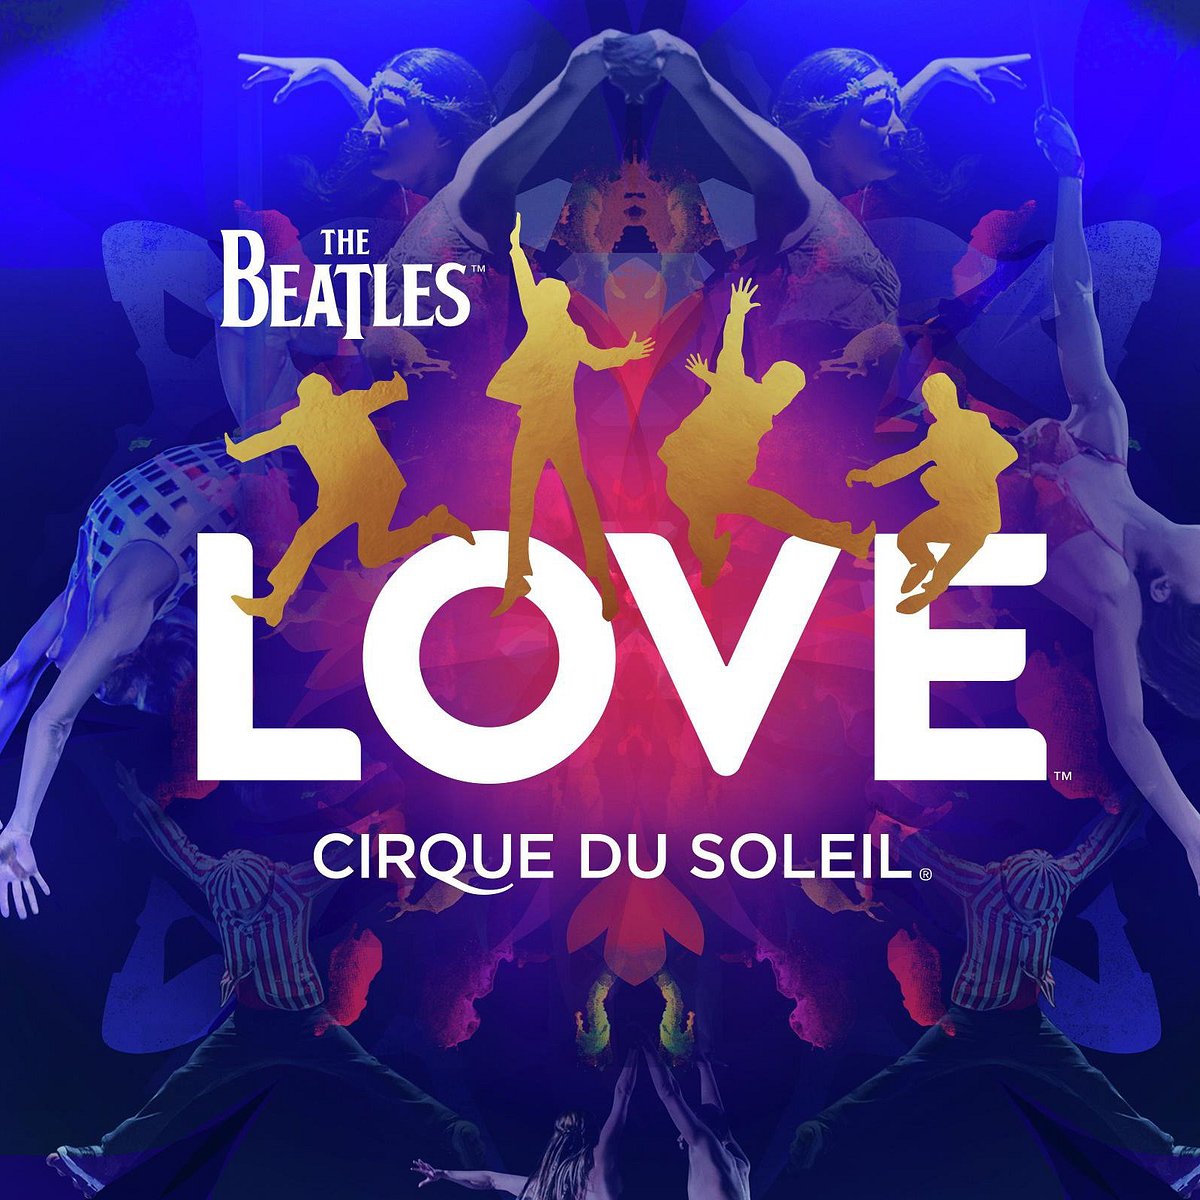 The Beatles Love Cirque du Soleil (Las Vegas) Lo que se debe